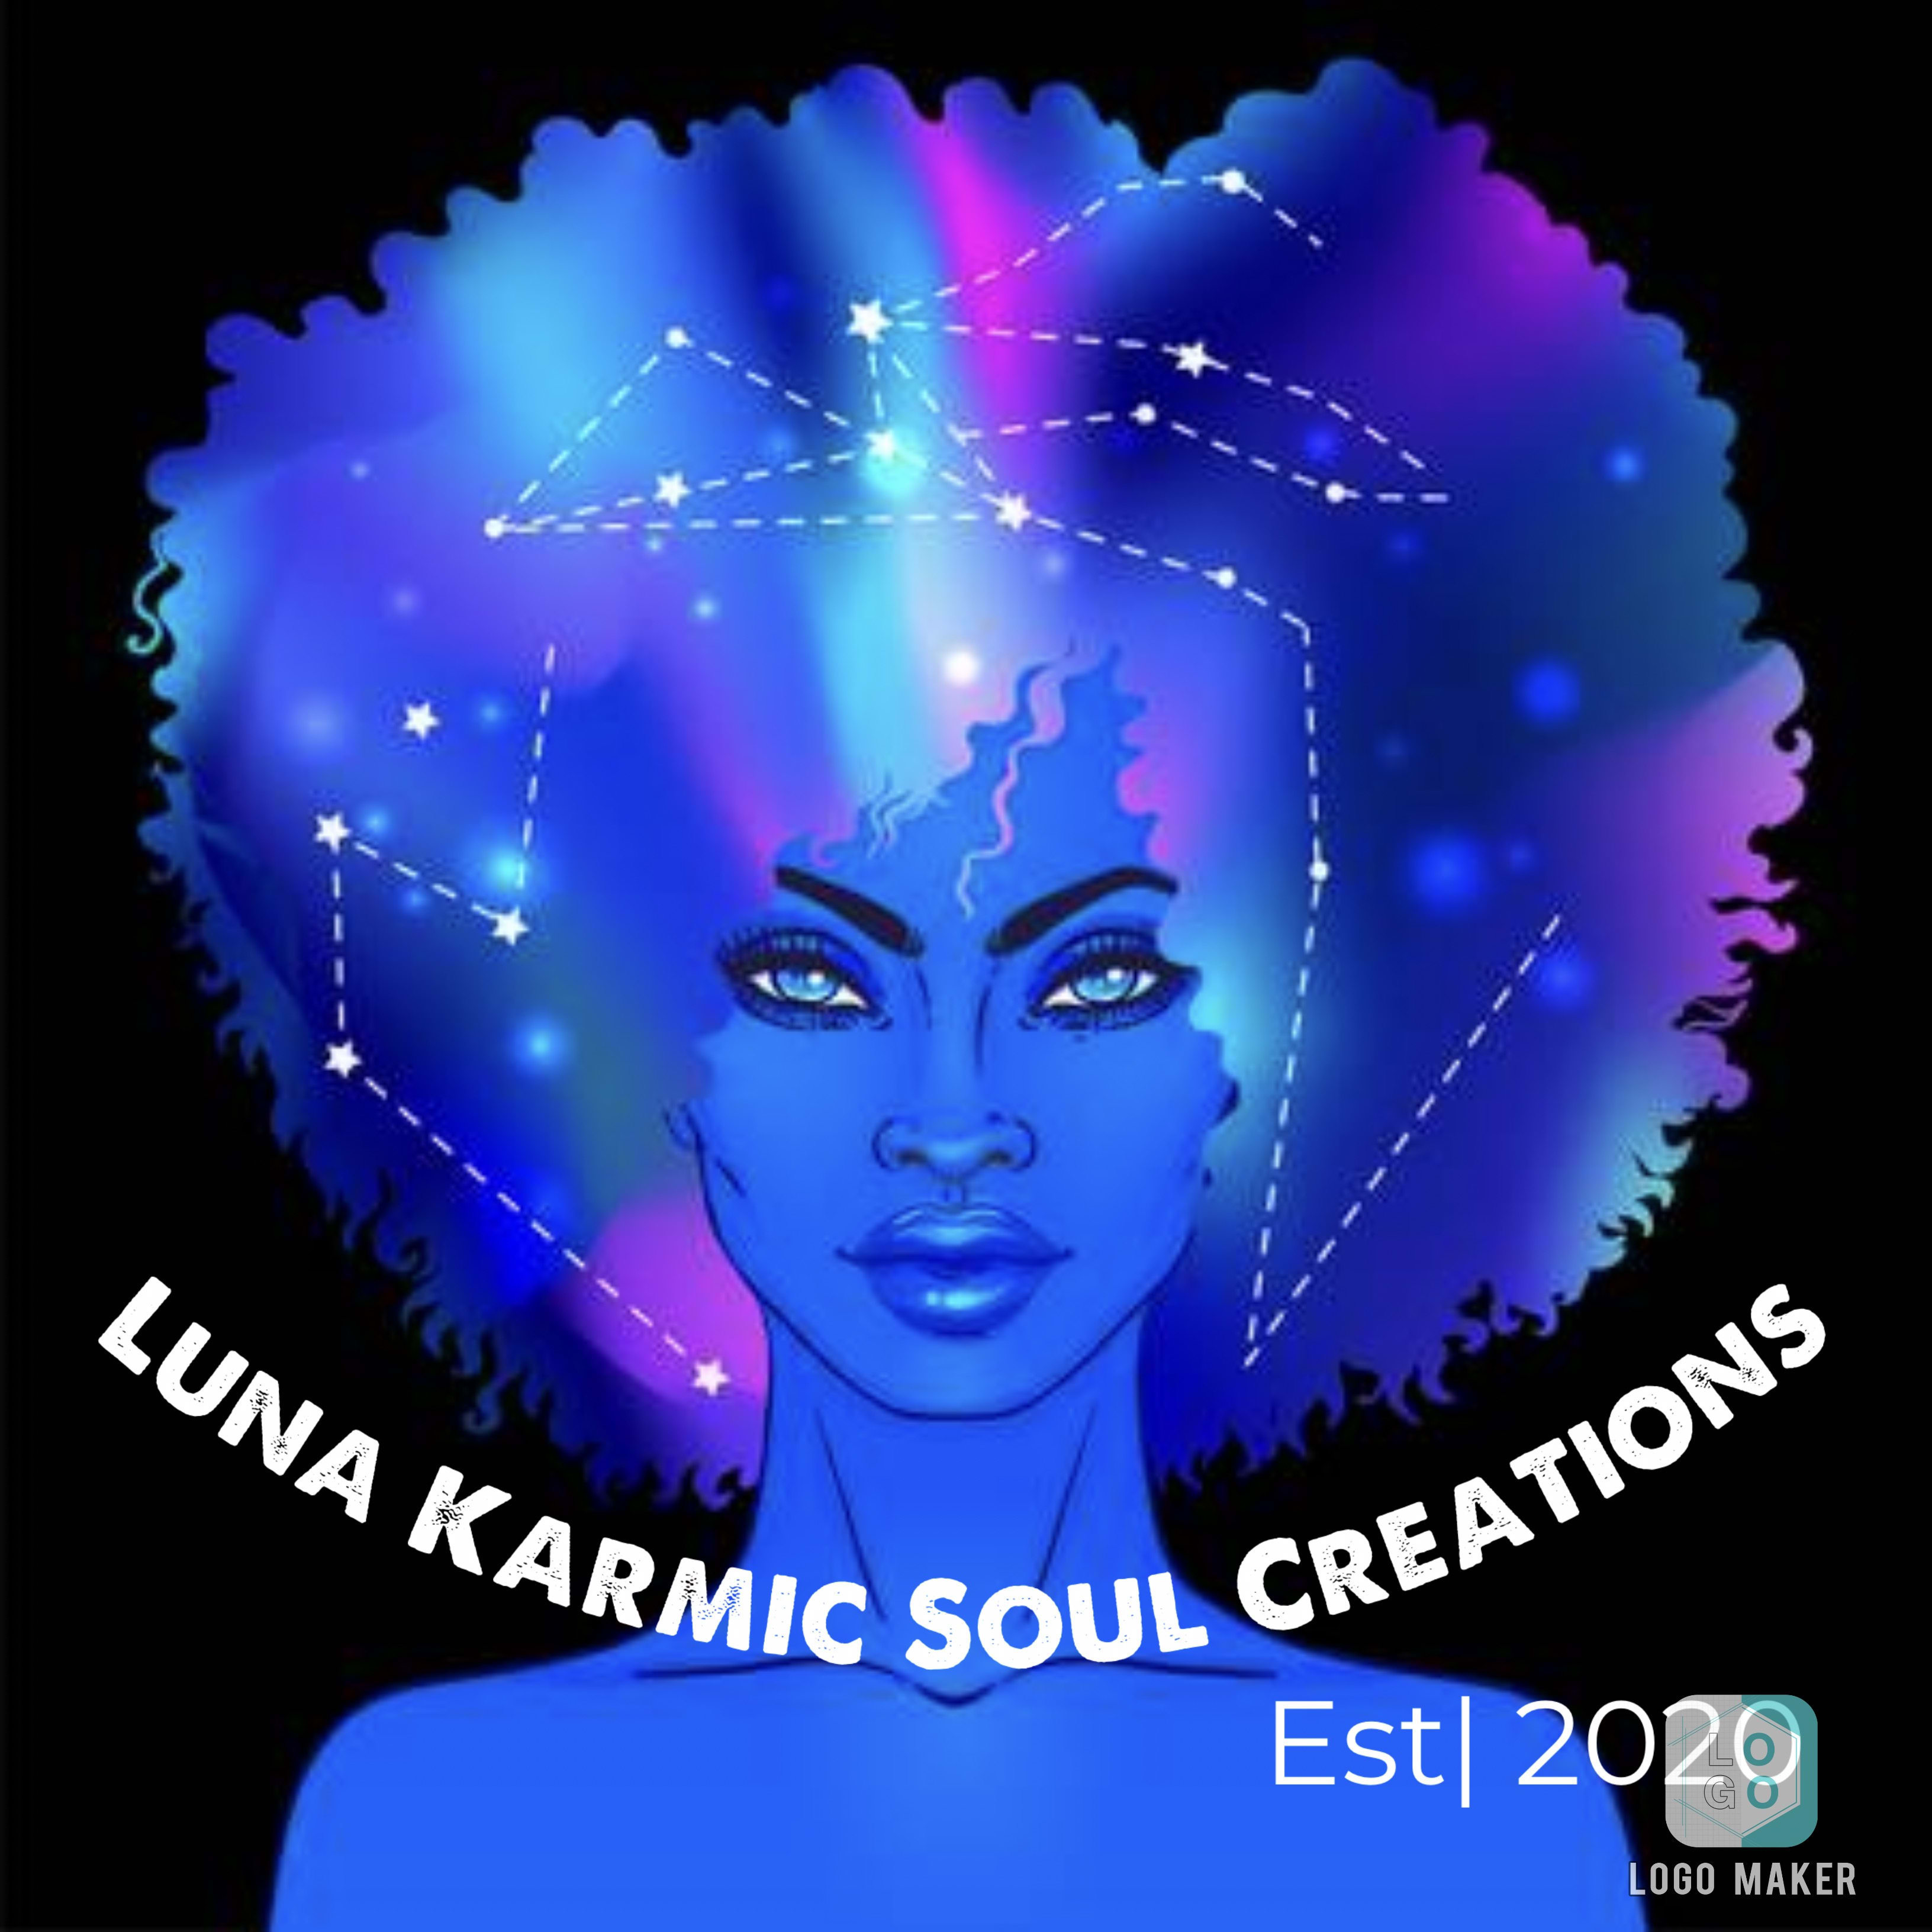 Luna Karmic Soul Creations